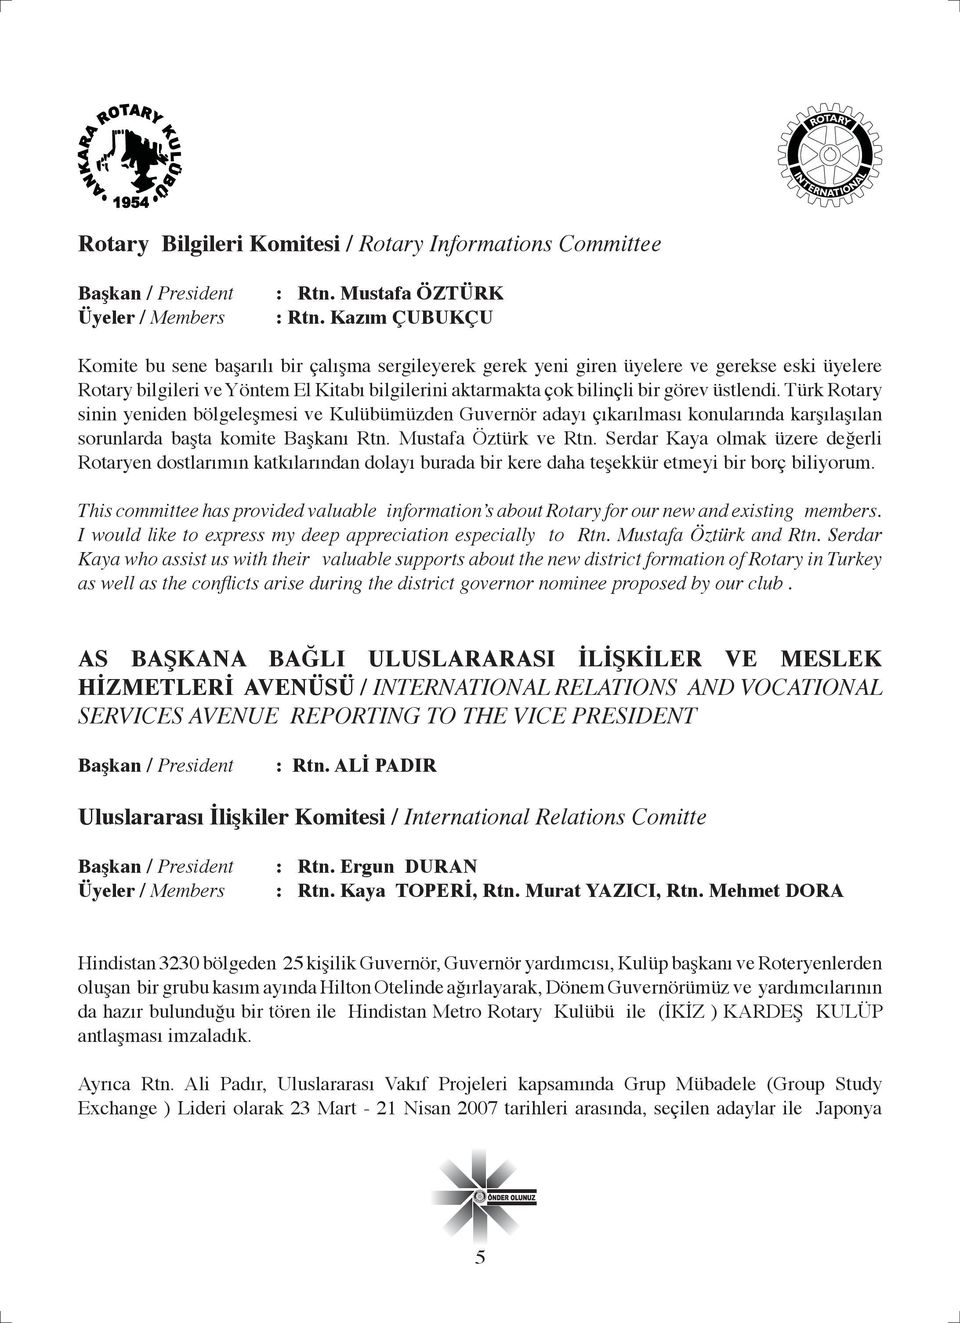 üstlendi. Türk Rotary sinin yeniden bölgeleşmesi ve Kulübümüzden Guvernör adayı çıkarılması konularında karşılaşılan sorunlarda başta komite Başkanı Rtn. Mustafa Öztürk ve Rtn.